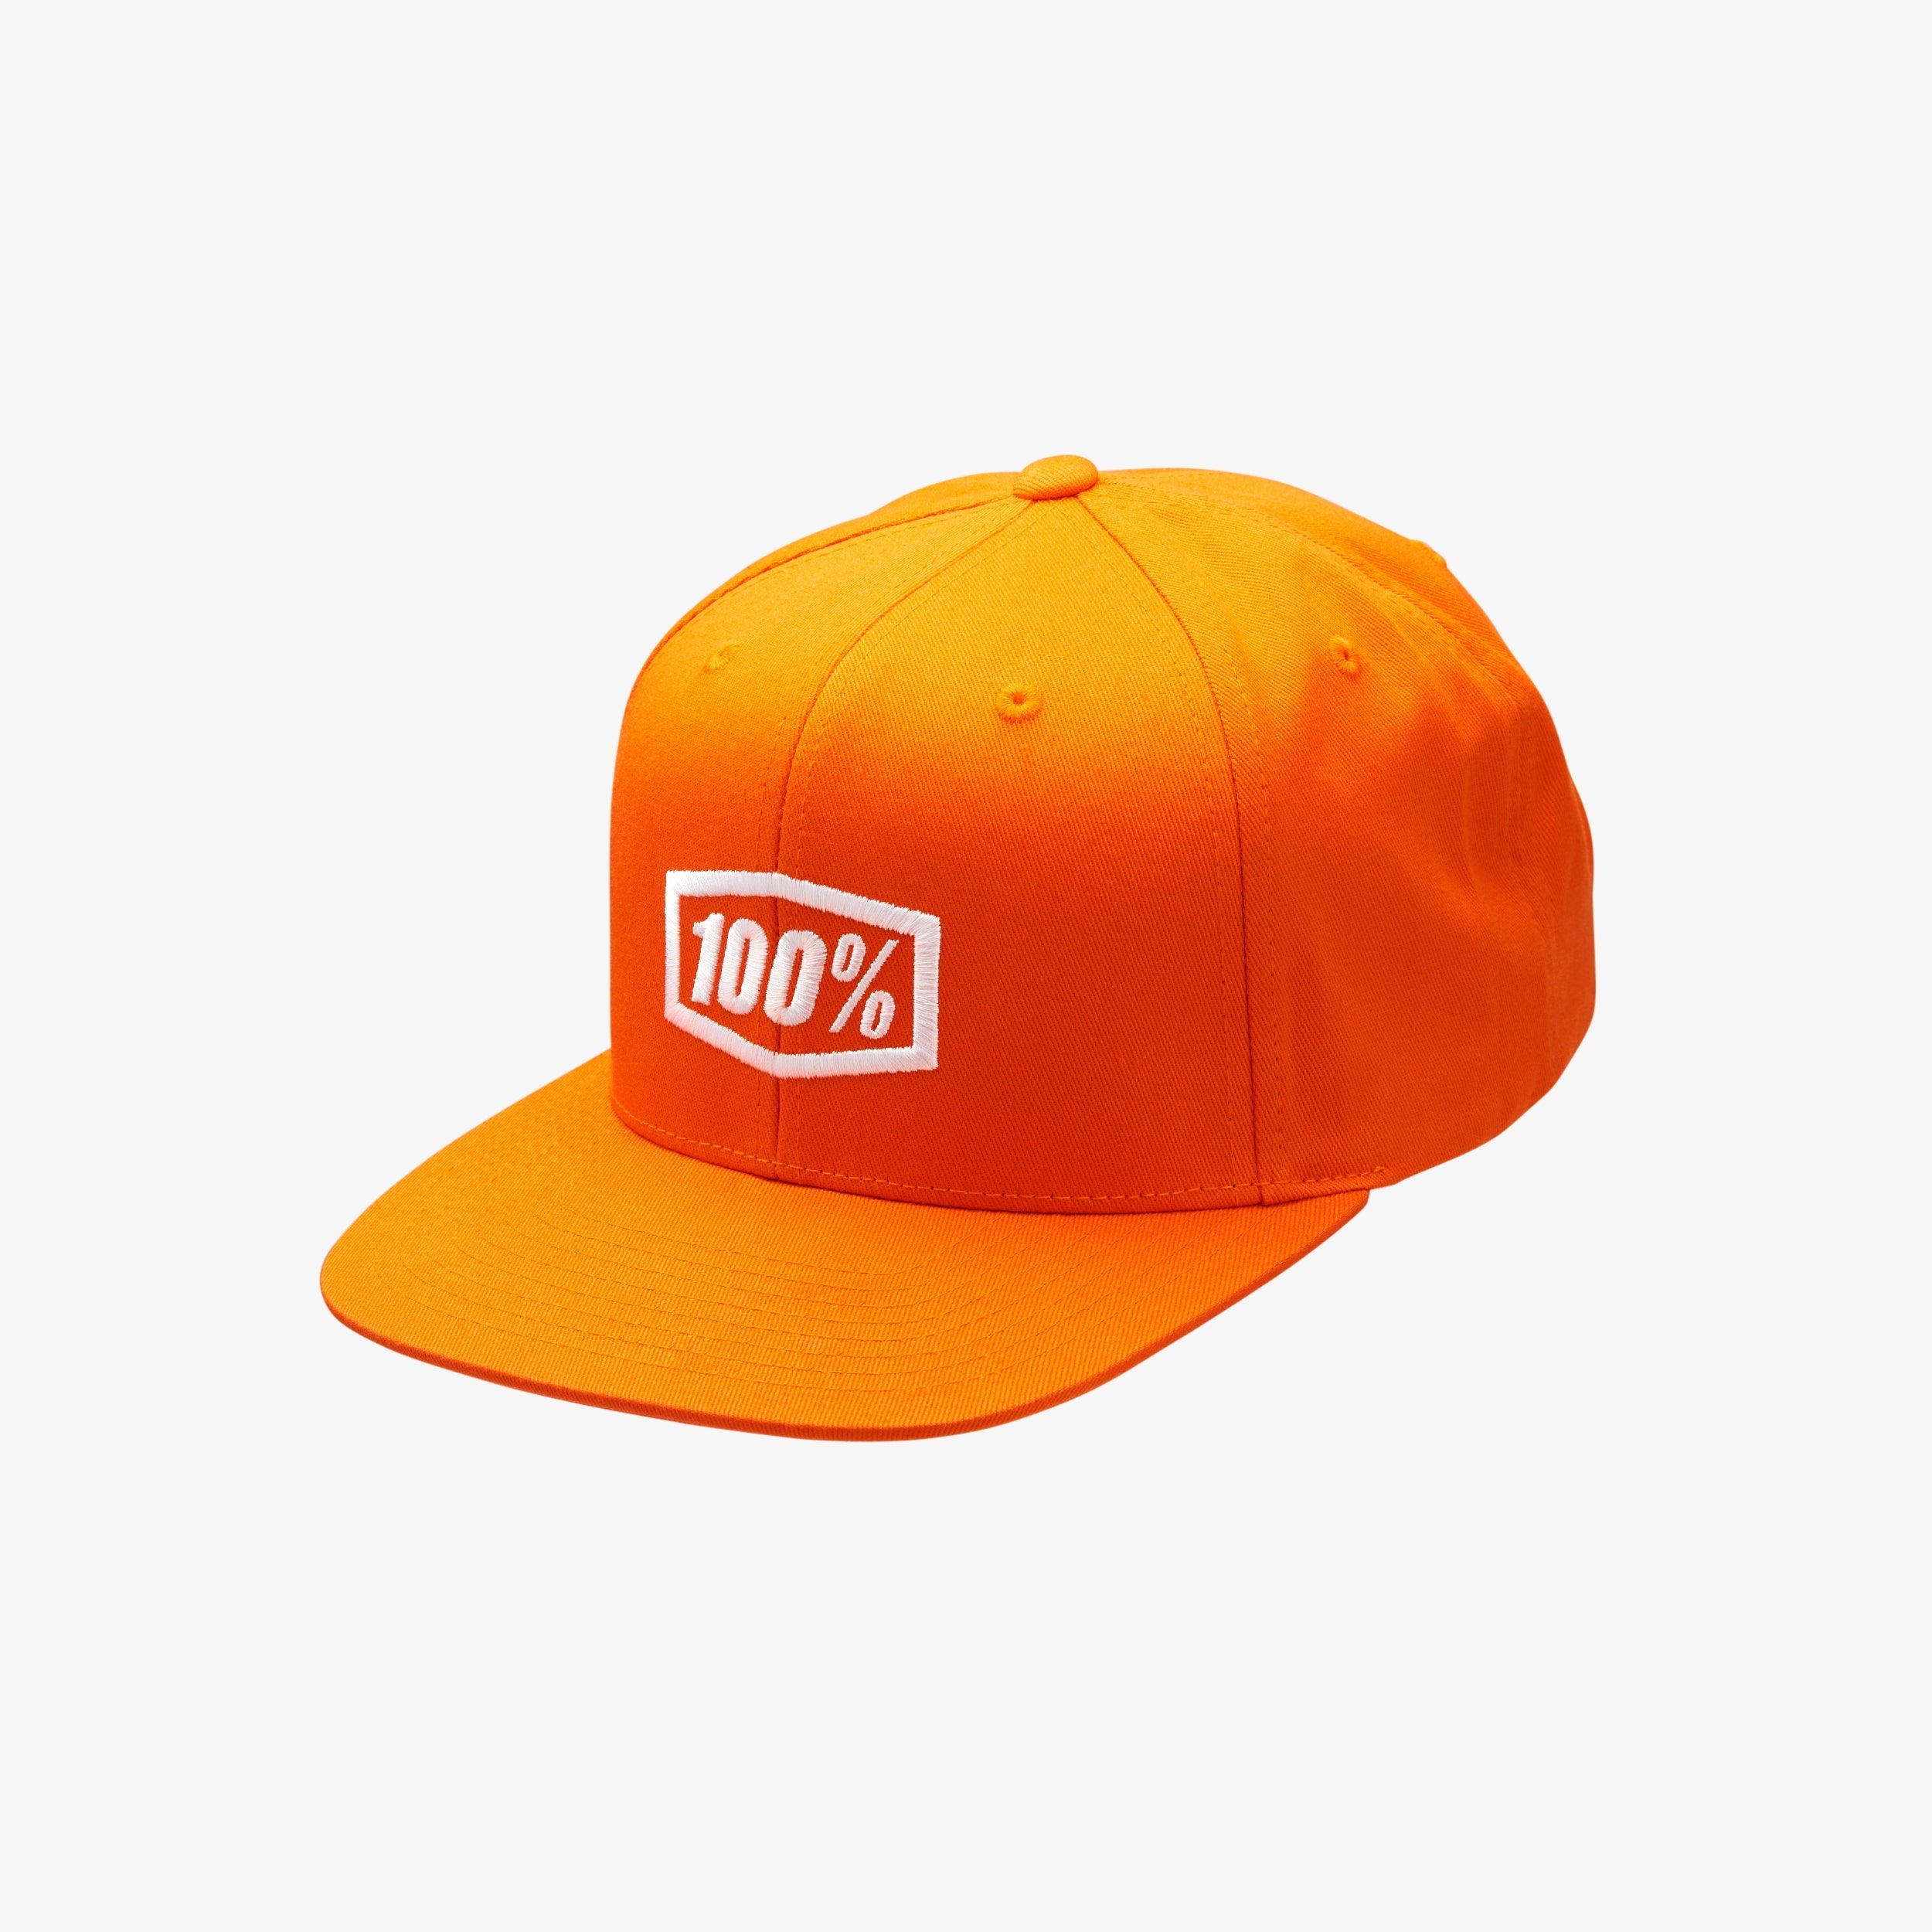 ICON Youth Snapback Cap Orange - OS